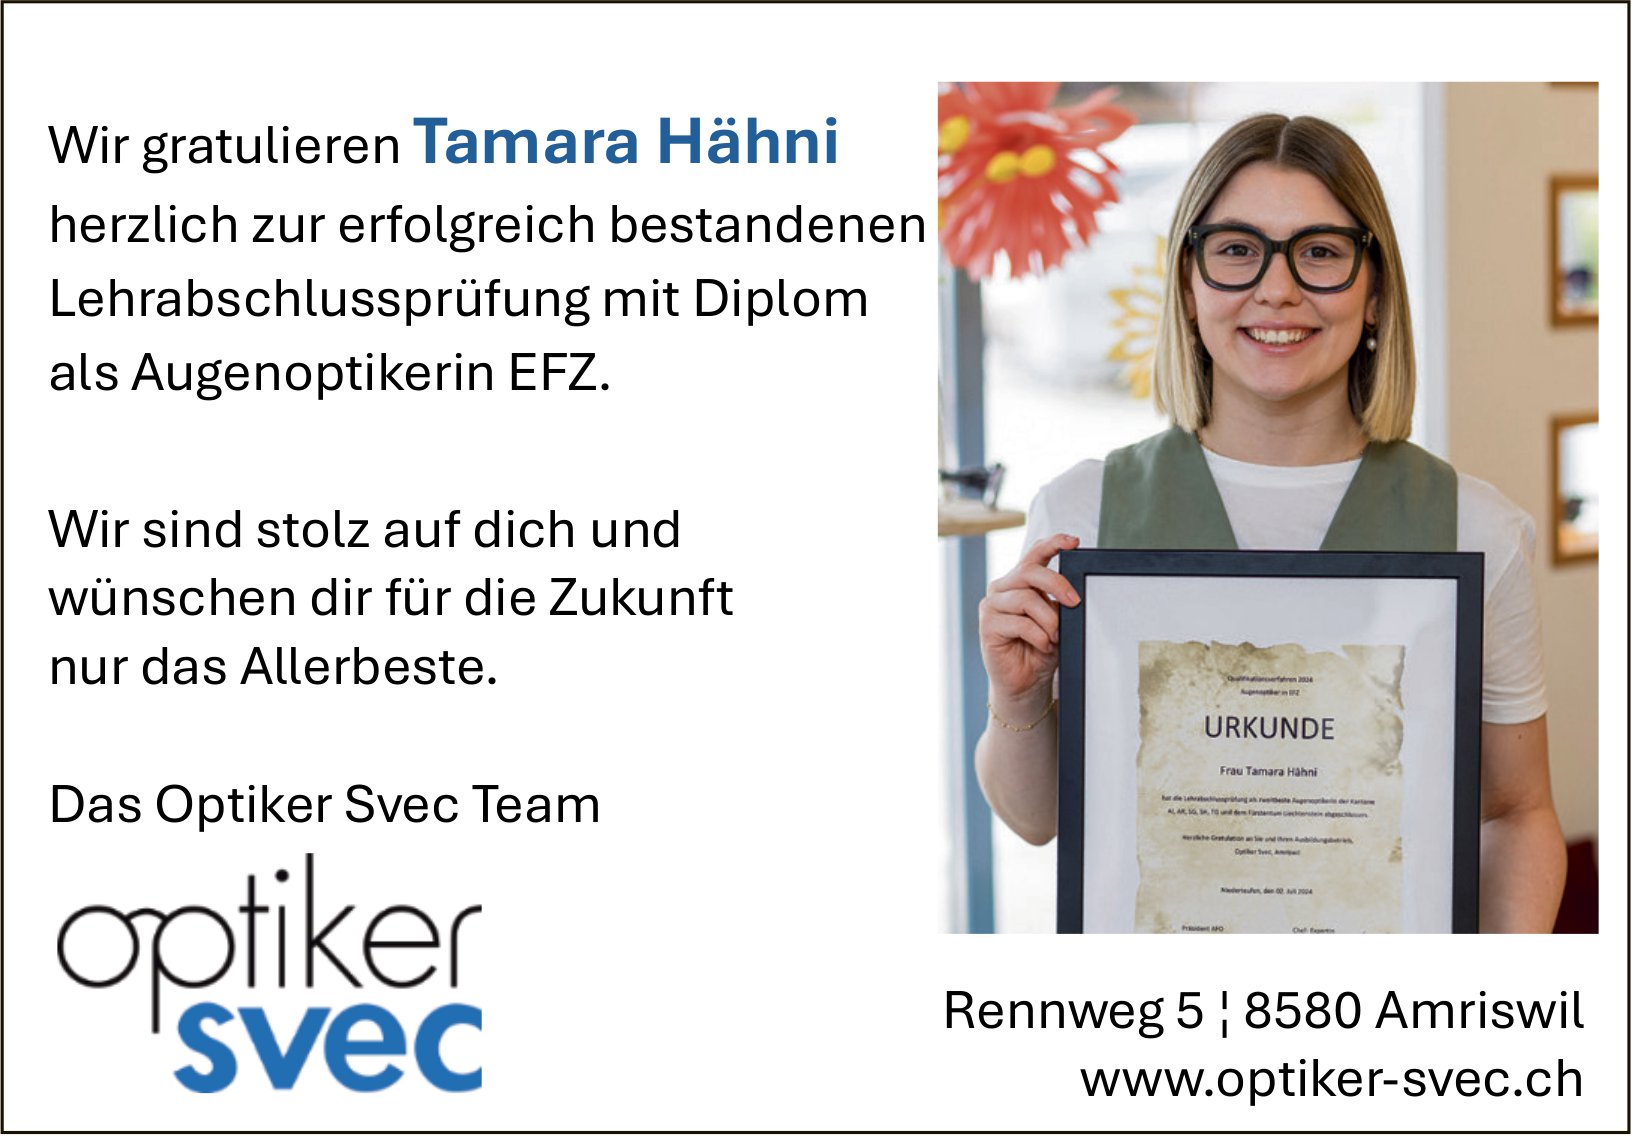 Optiker Svec, Amriswil - Wir gratulieren Tamara Hähni